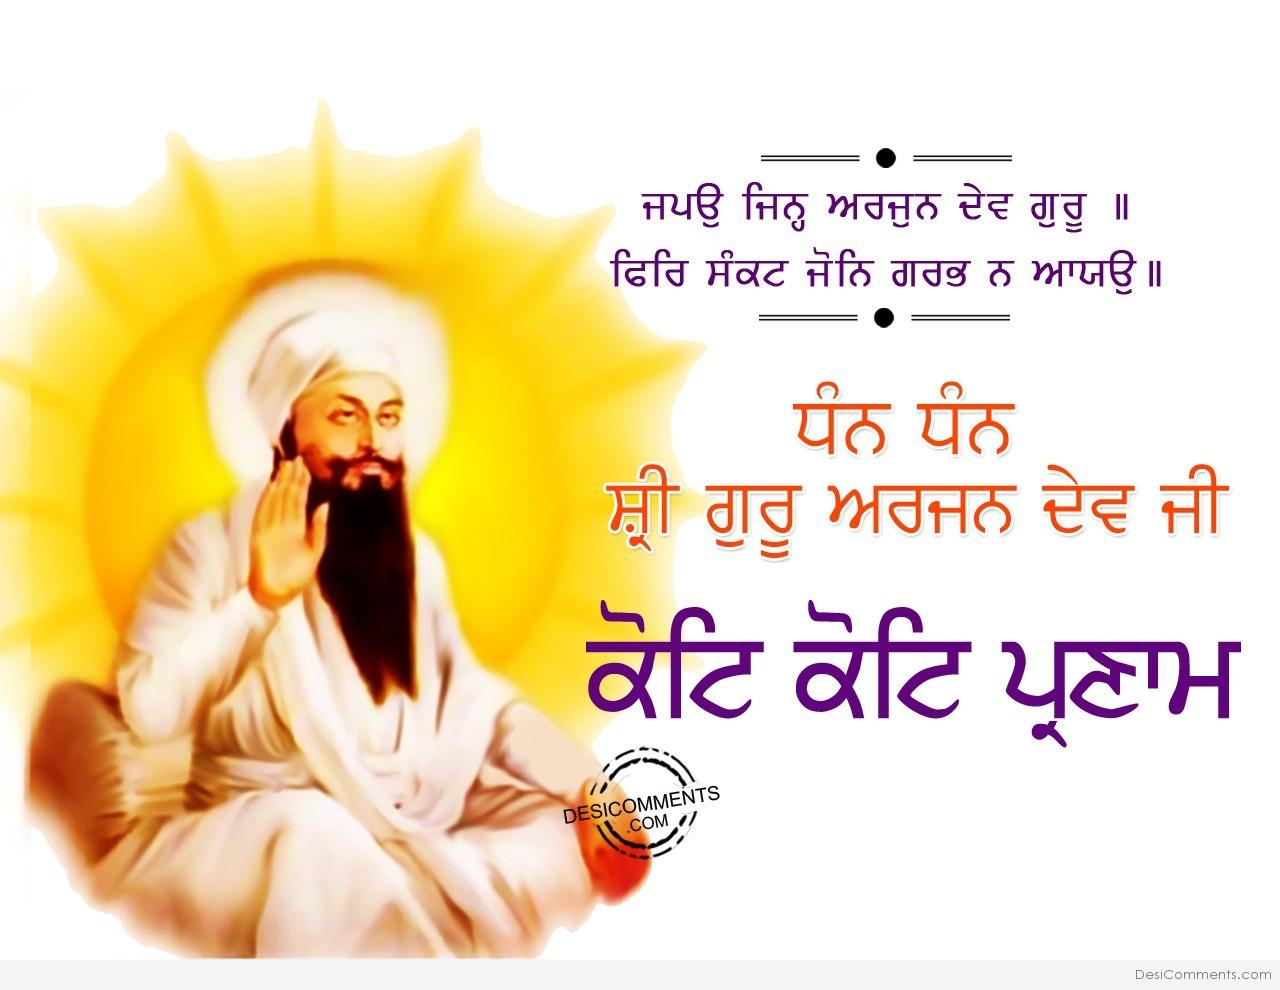 Shri Guru Arjan Dev Ji Gurgaddi Diwas Wishes & Images in Punjabi